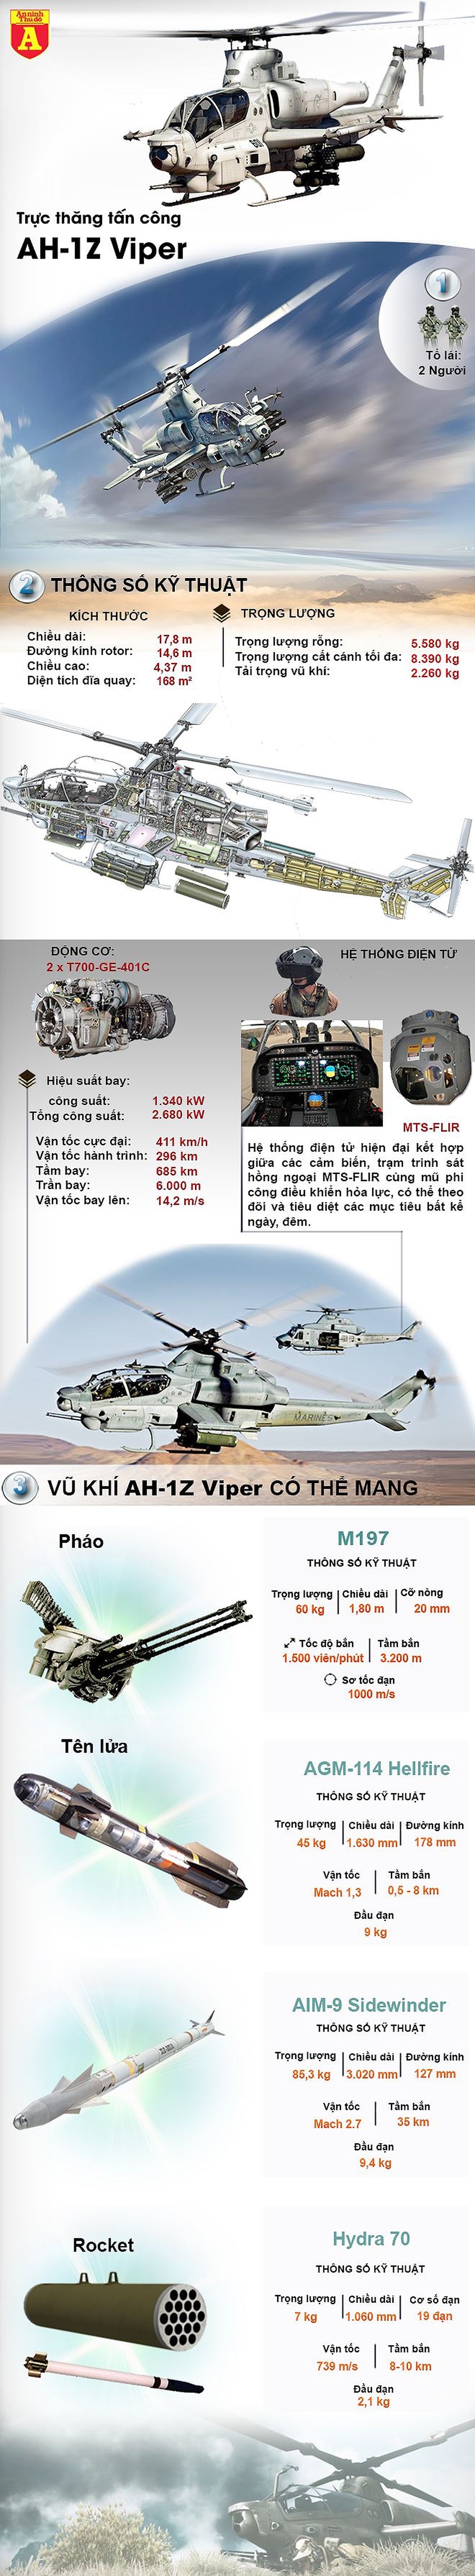 [Infographic] Phi đội trực thăng "Rắn siêu độc" của Mỹ sẵn sàng phá tàu cao tốc Iran - Ảnh 1